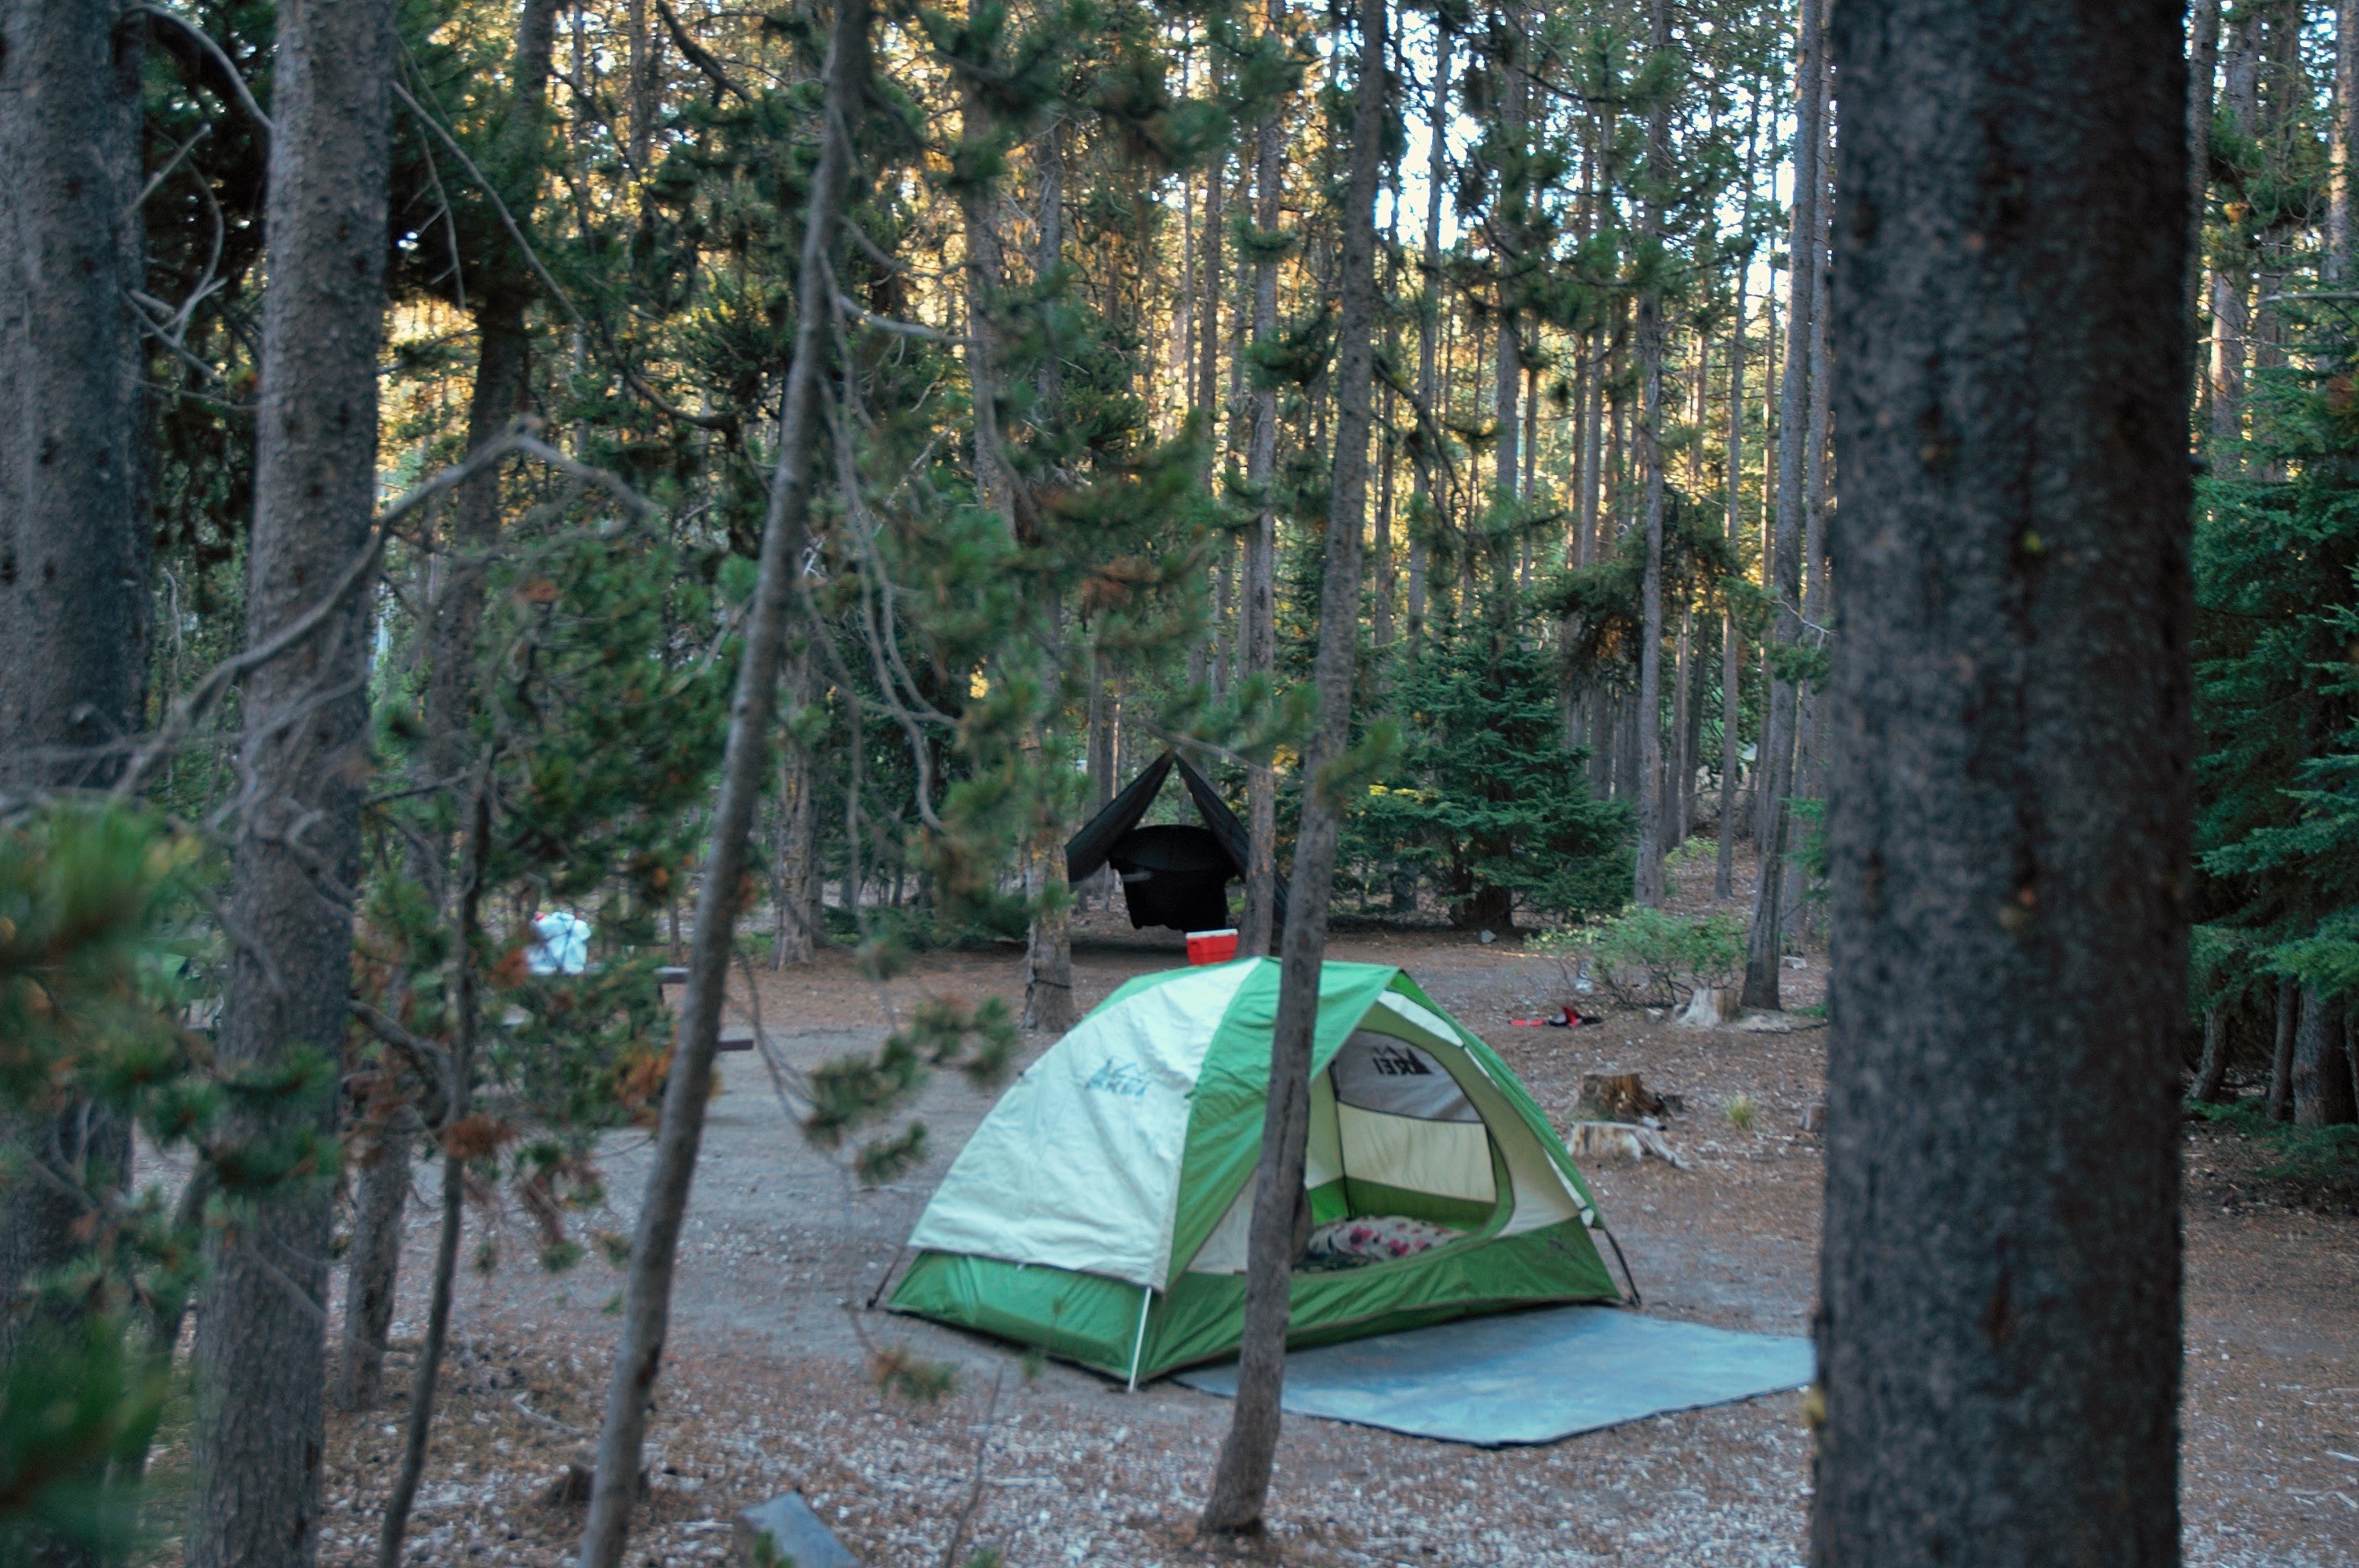 full view of campsite